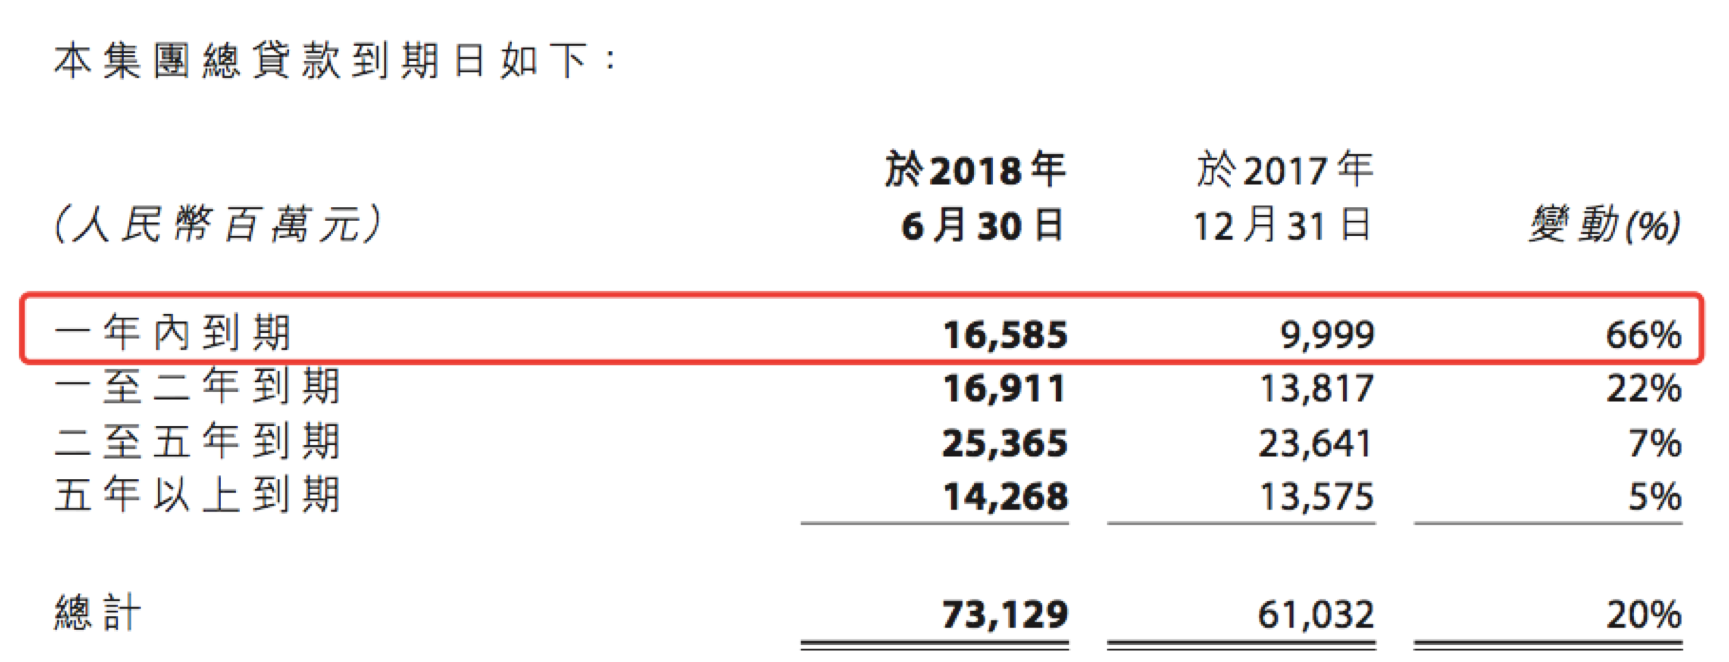 半年报点评|远洋集团:毛利率上升至24% 资产总值增至2192亿元-中国网地产